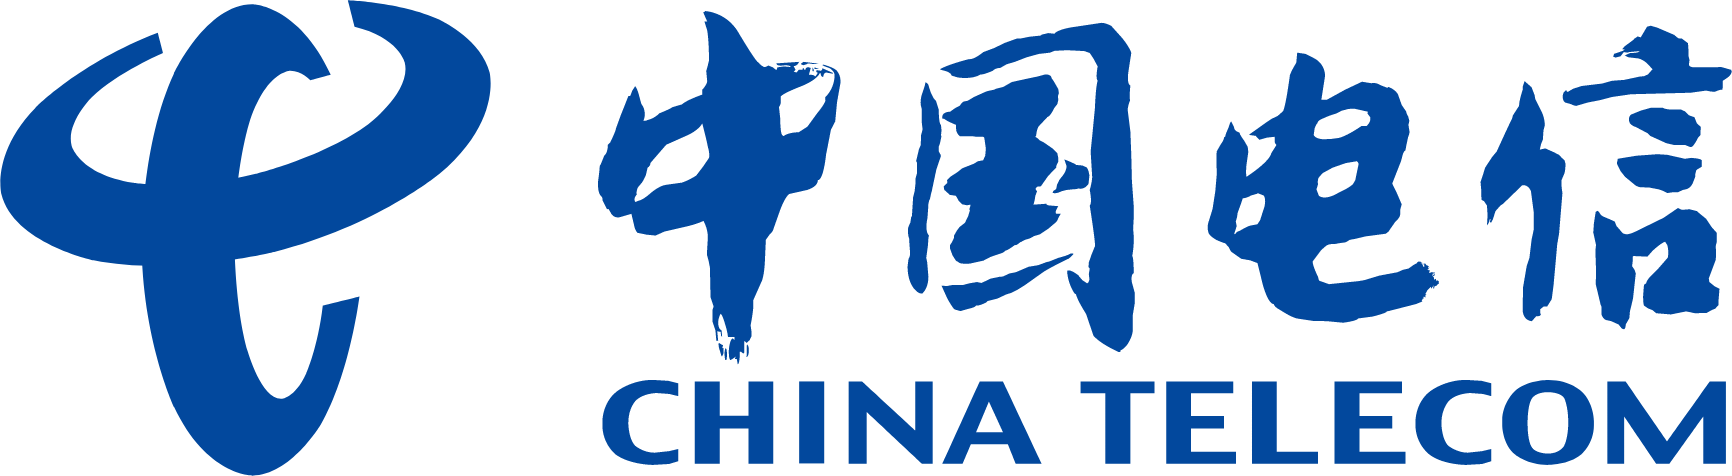 China Telecom logo large (transparent PNG)